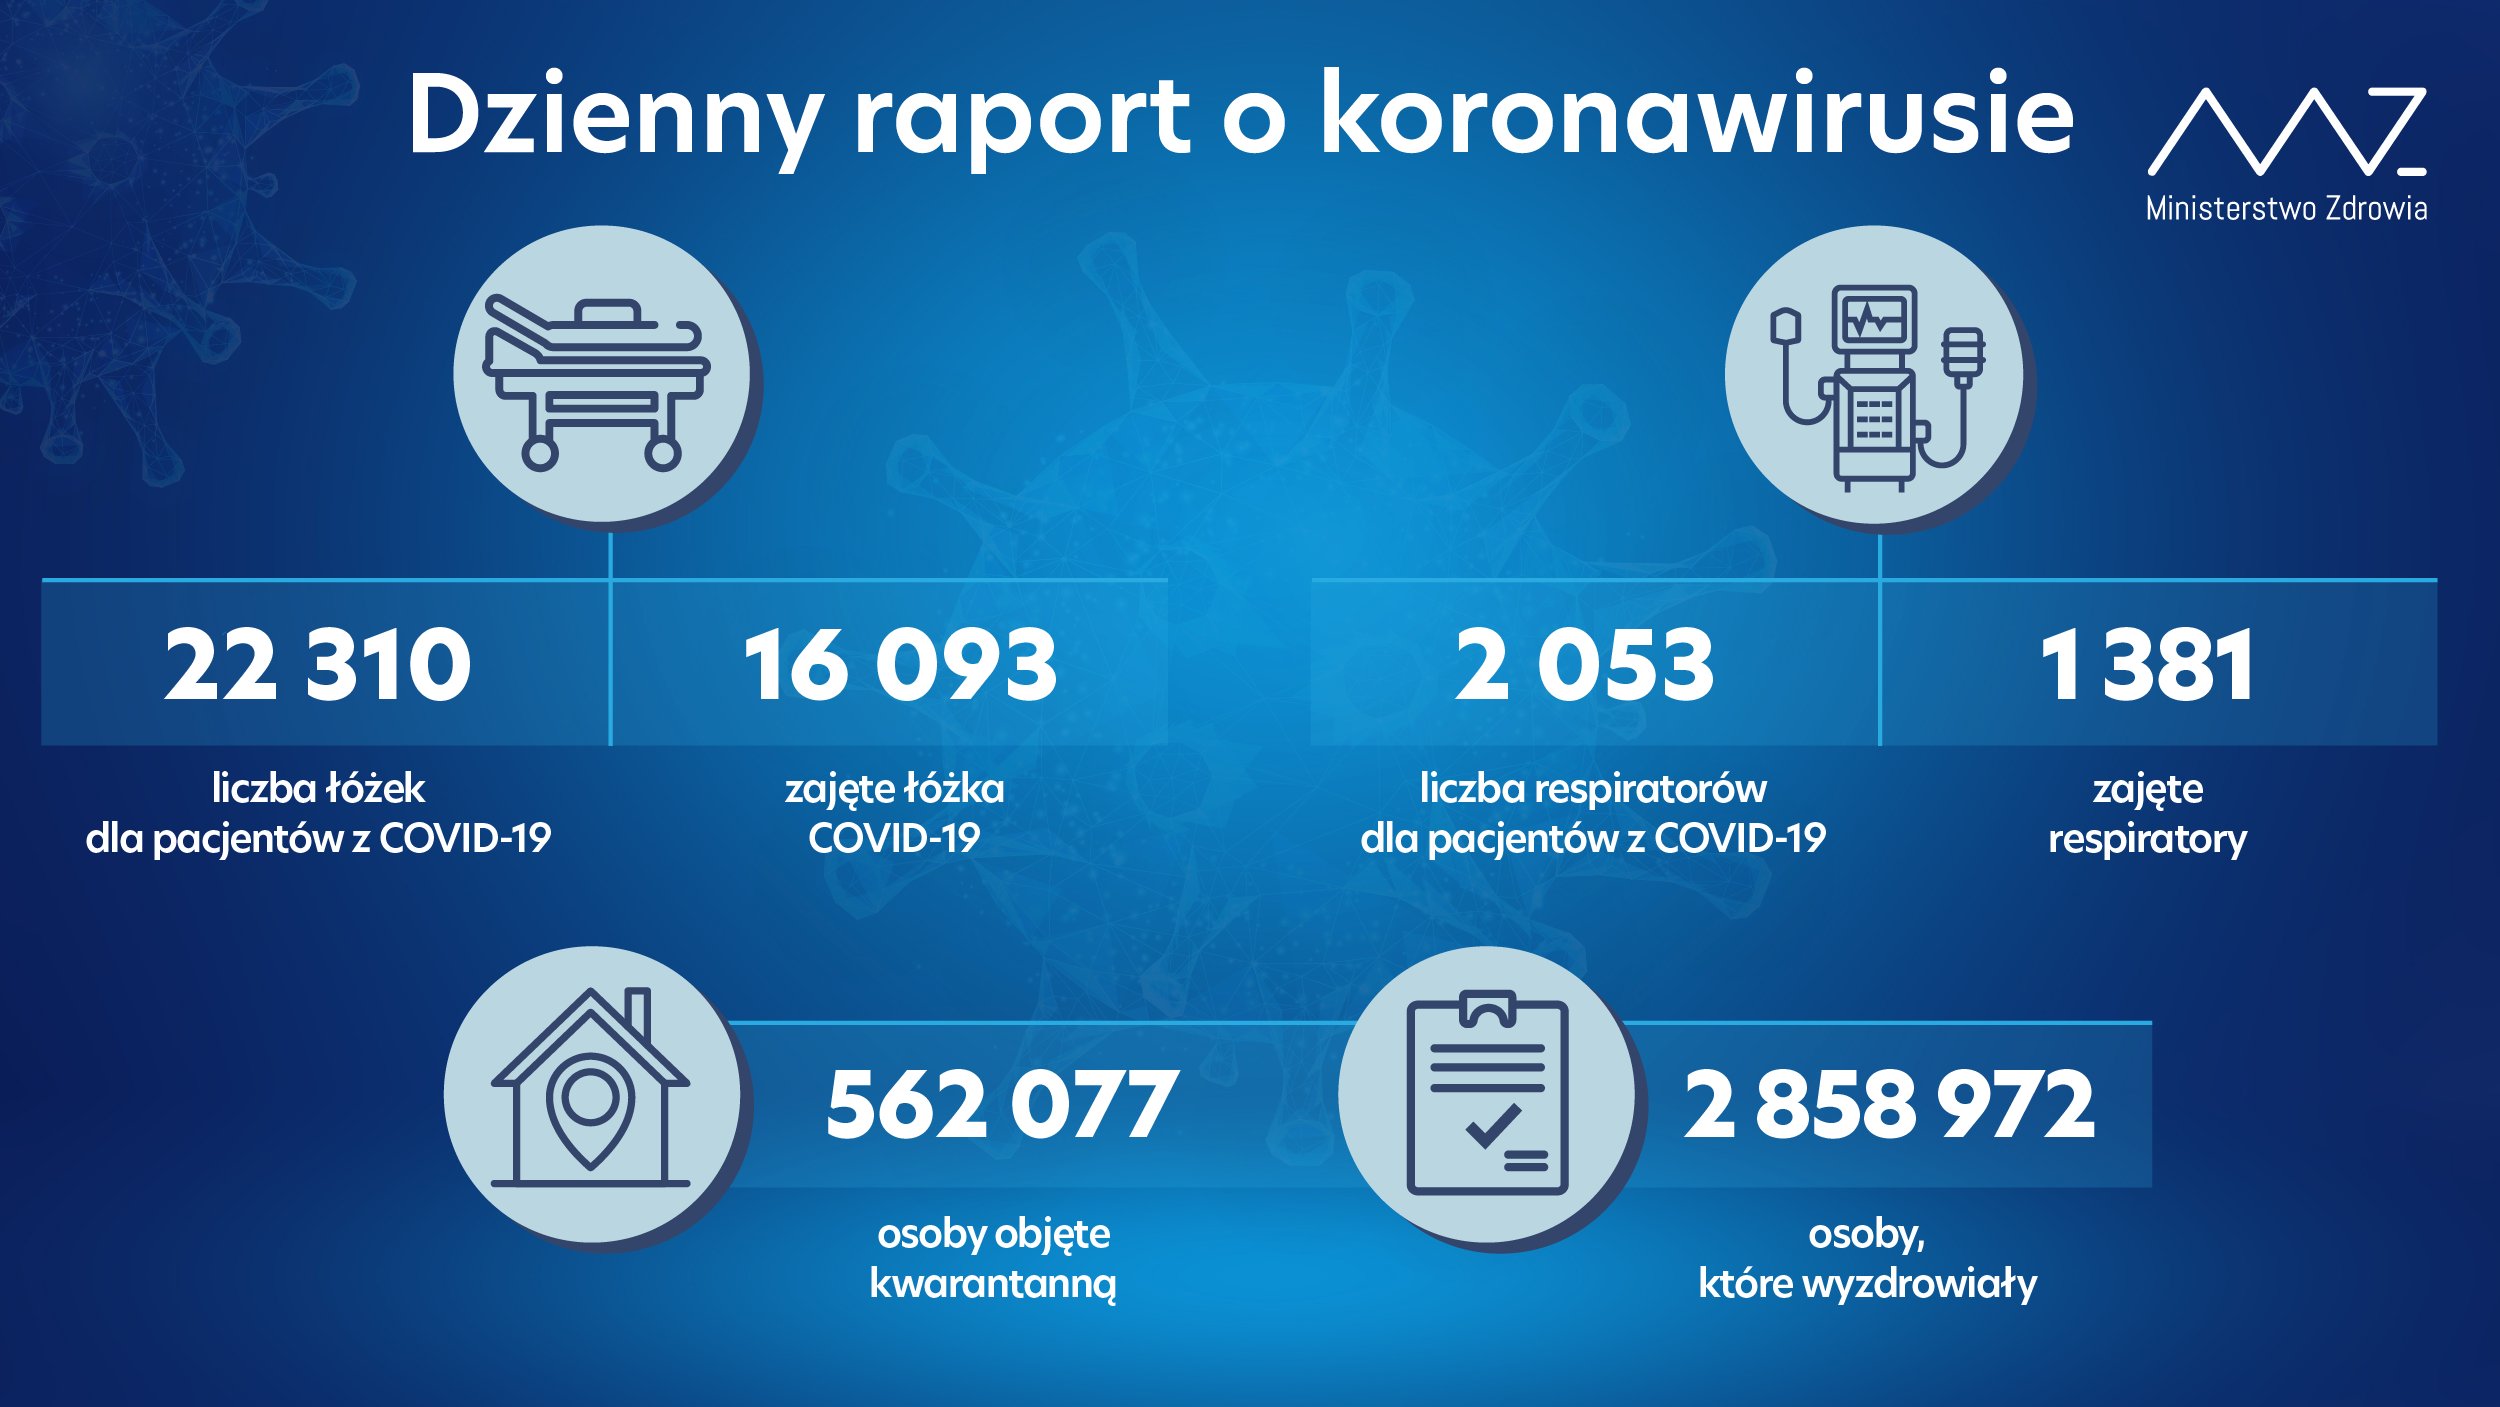 Ponad 23 tys. nowych zakażeń koronawirusem. Najwięcej zgonów w woj. mazowieckim i lubelskim